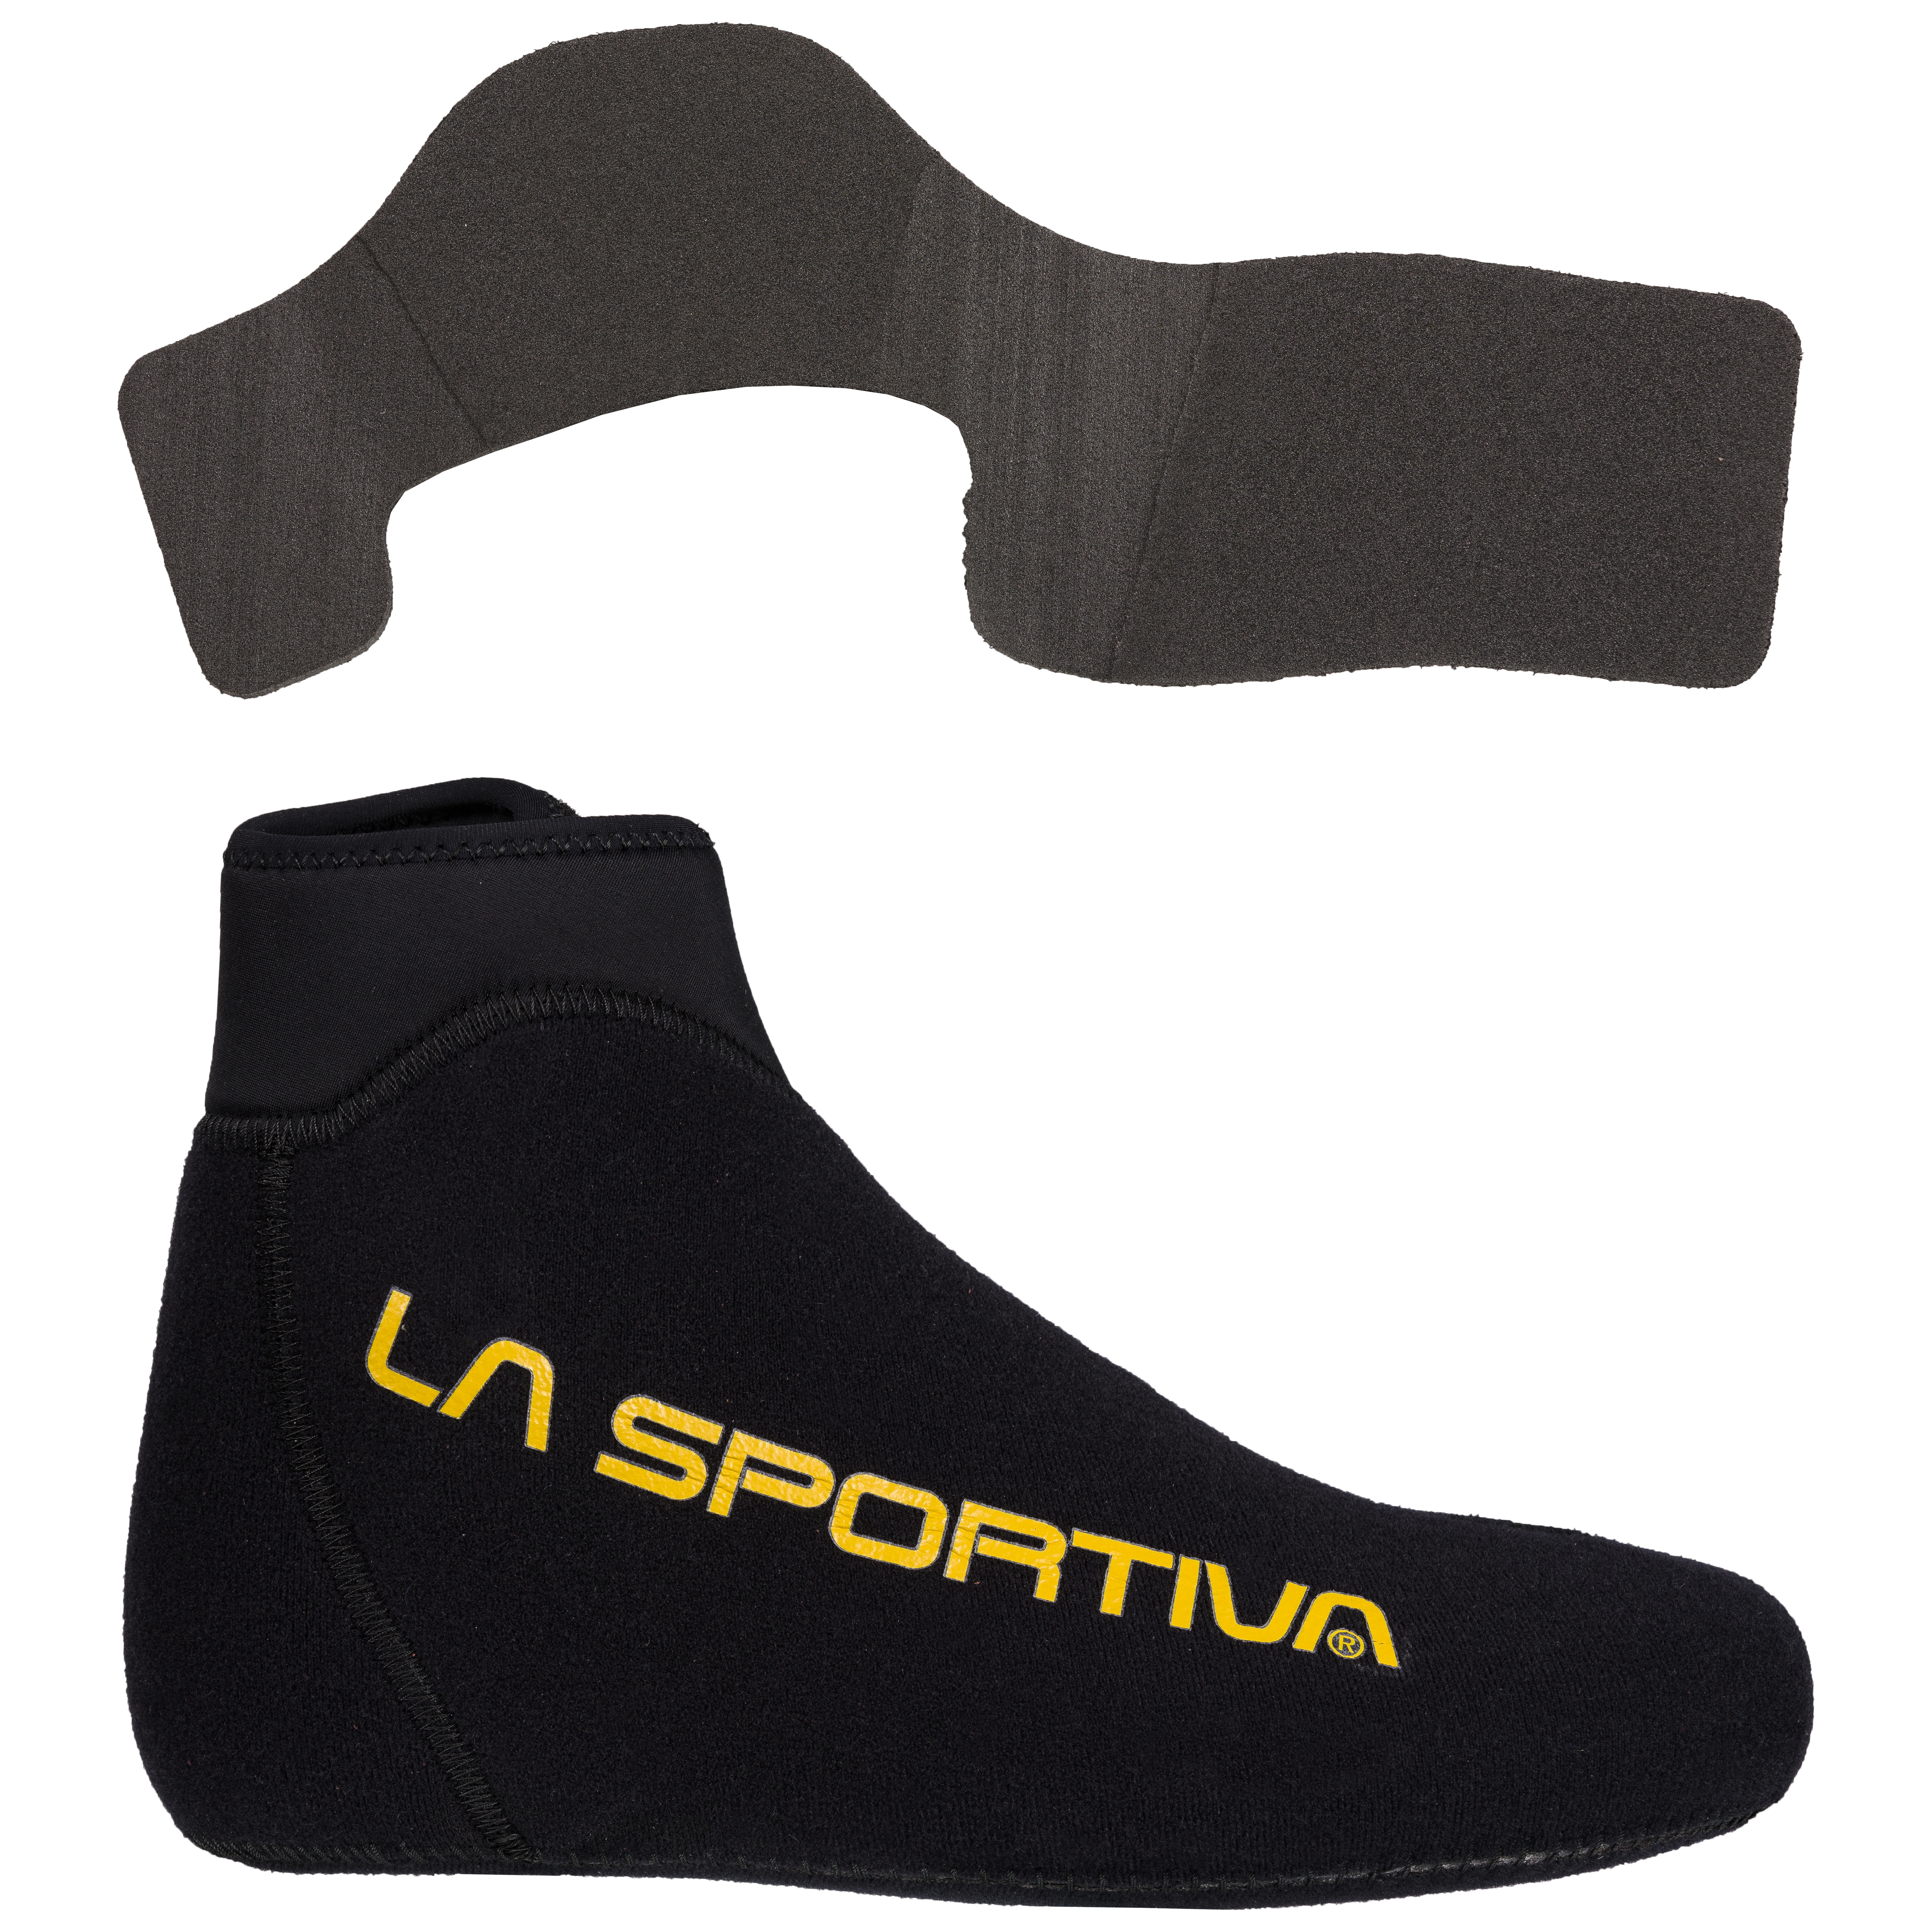 Лыжные ботинки для скитура La Sportiva Raceborg